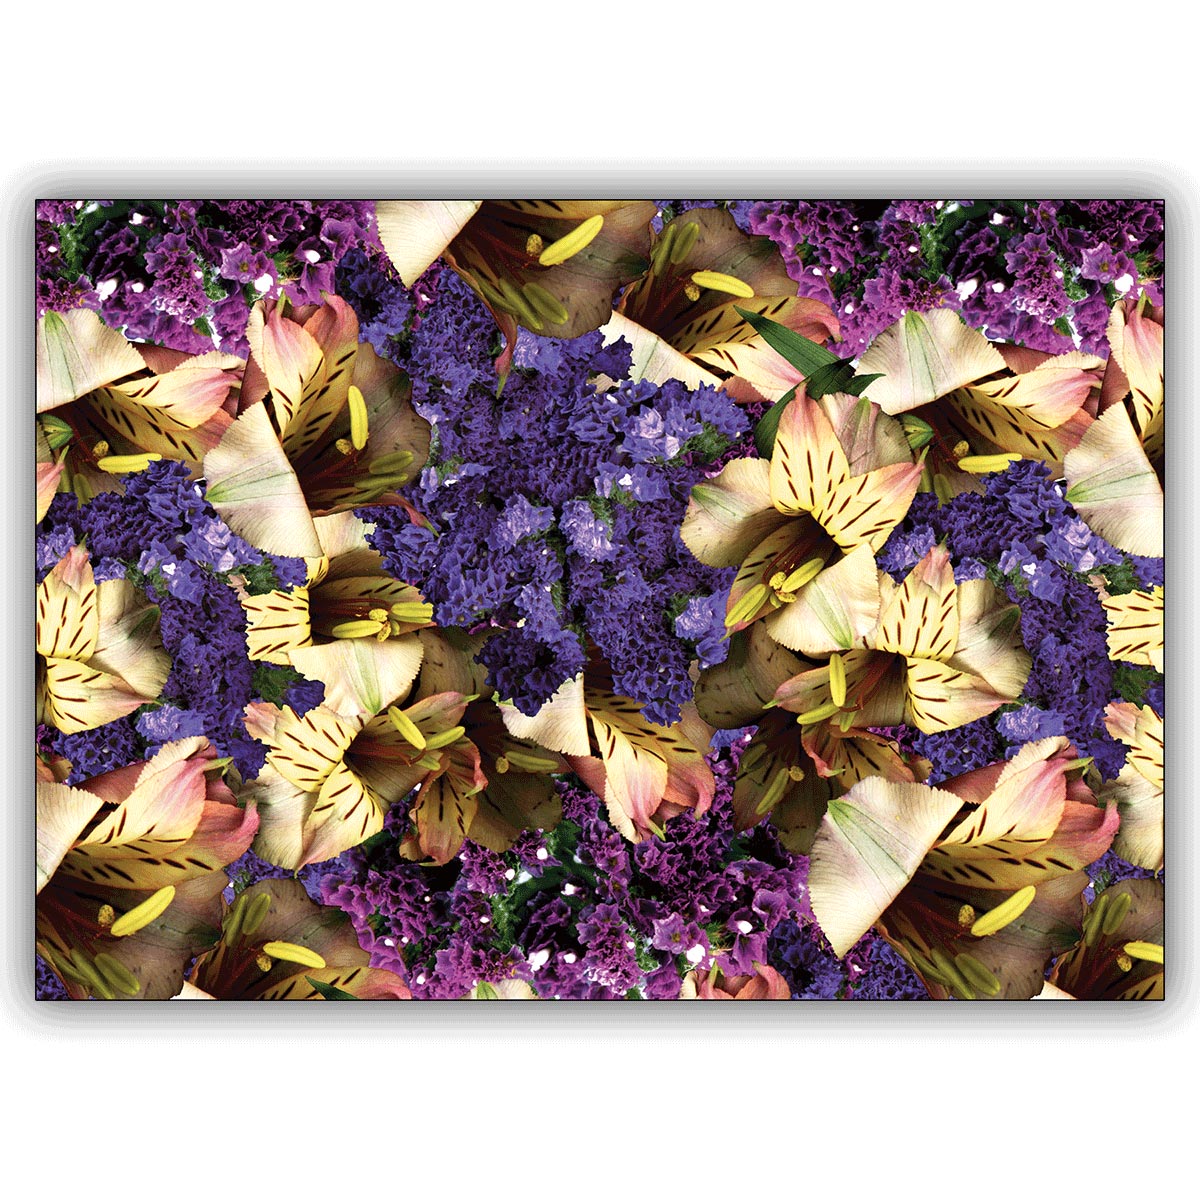 Trendige Künstler Fotokunst Grußkarte mit Lilien und trocken Blumen: Blumen Kaleidoskop